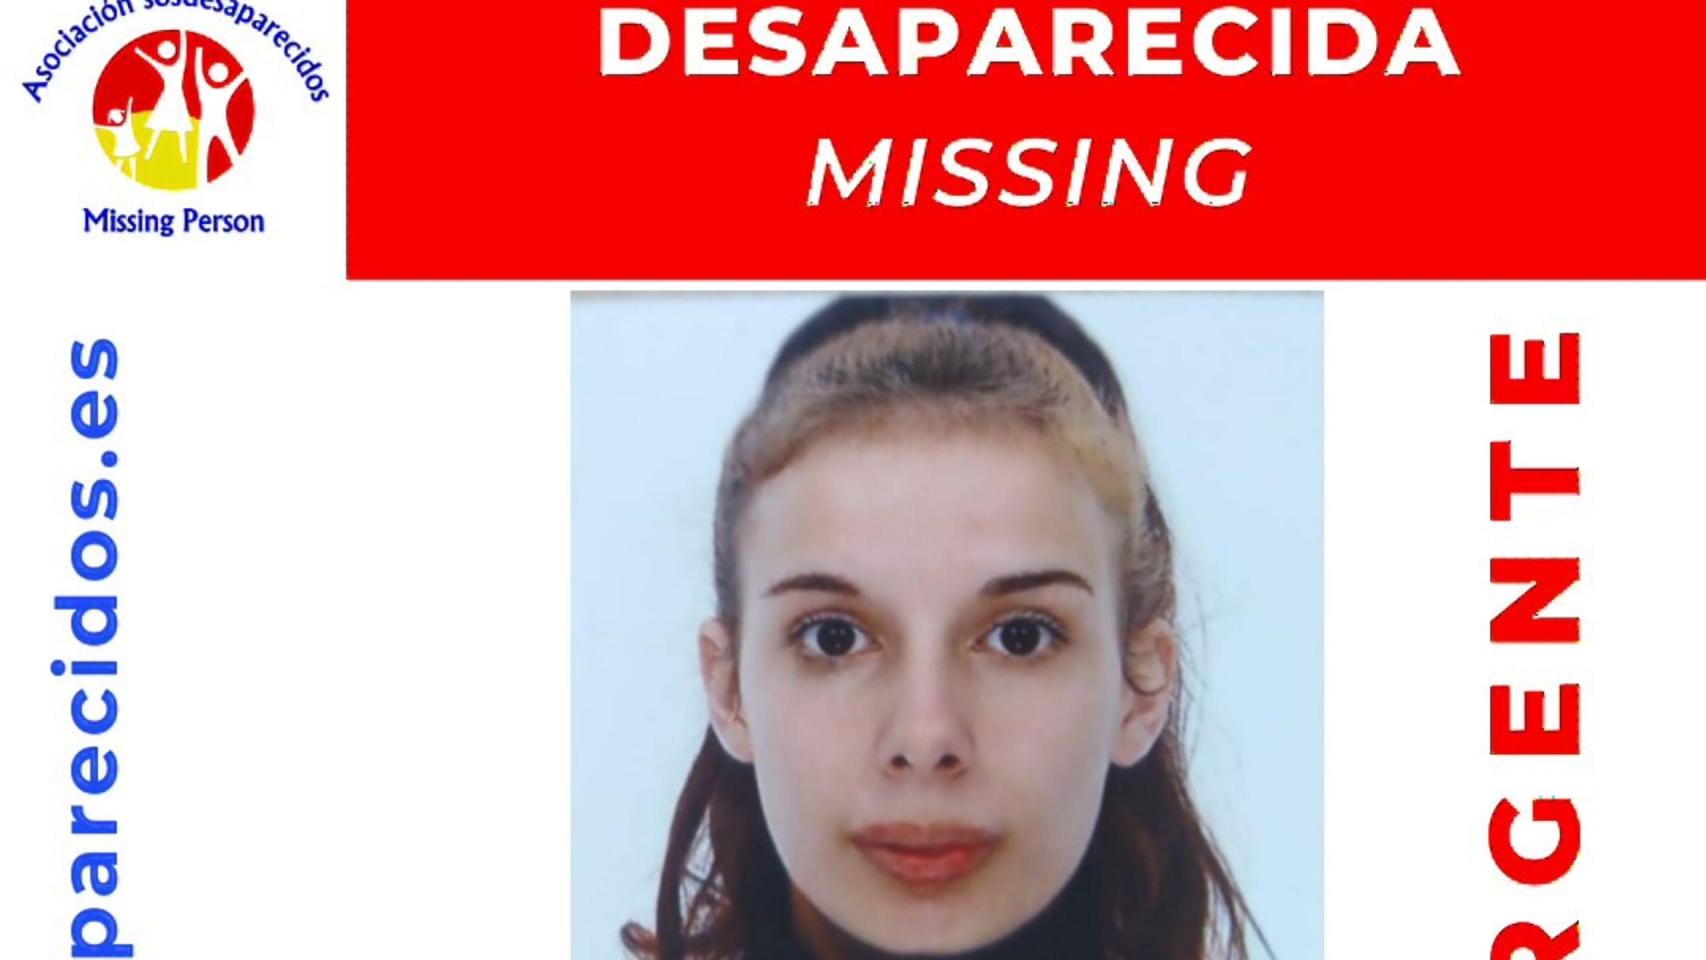 Se busca a una menor de 17 años desaparecida en Coristanco (A Coruña) desde el 3 de febrero